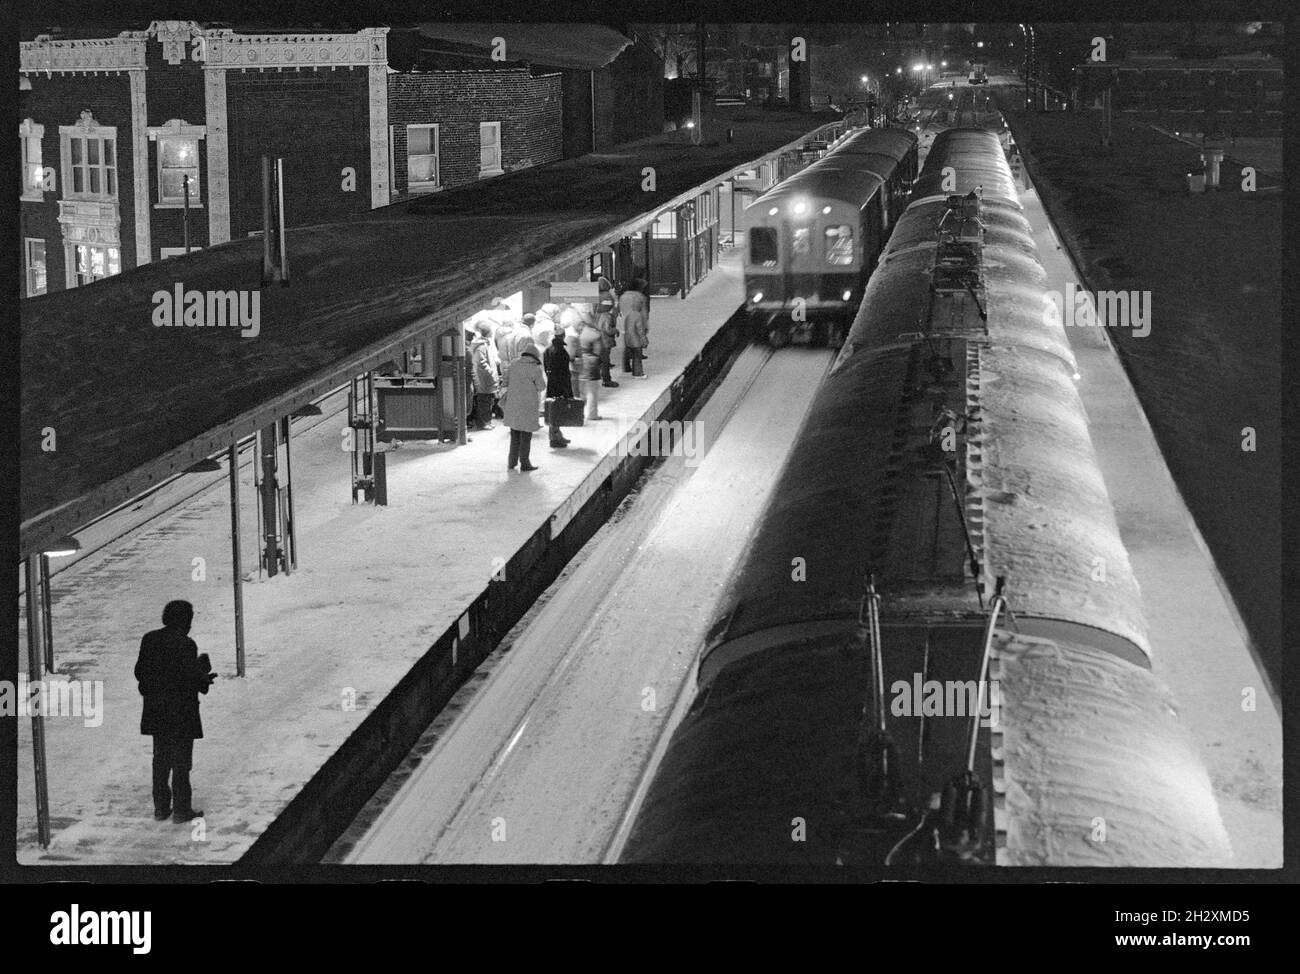 Chicago train tracks : 2 347 images, photos et images vectorielles de stock